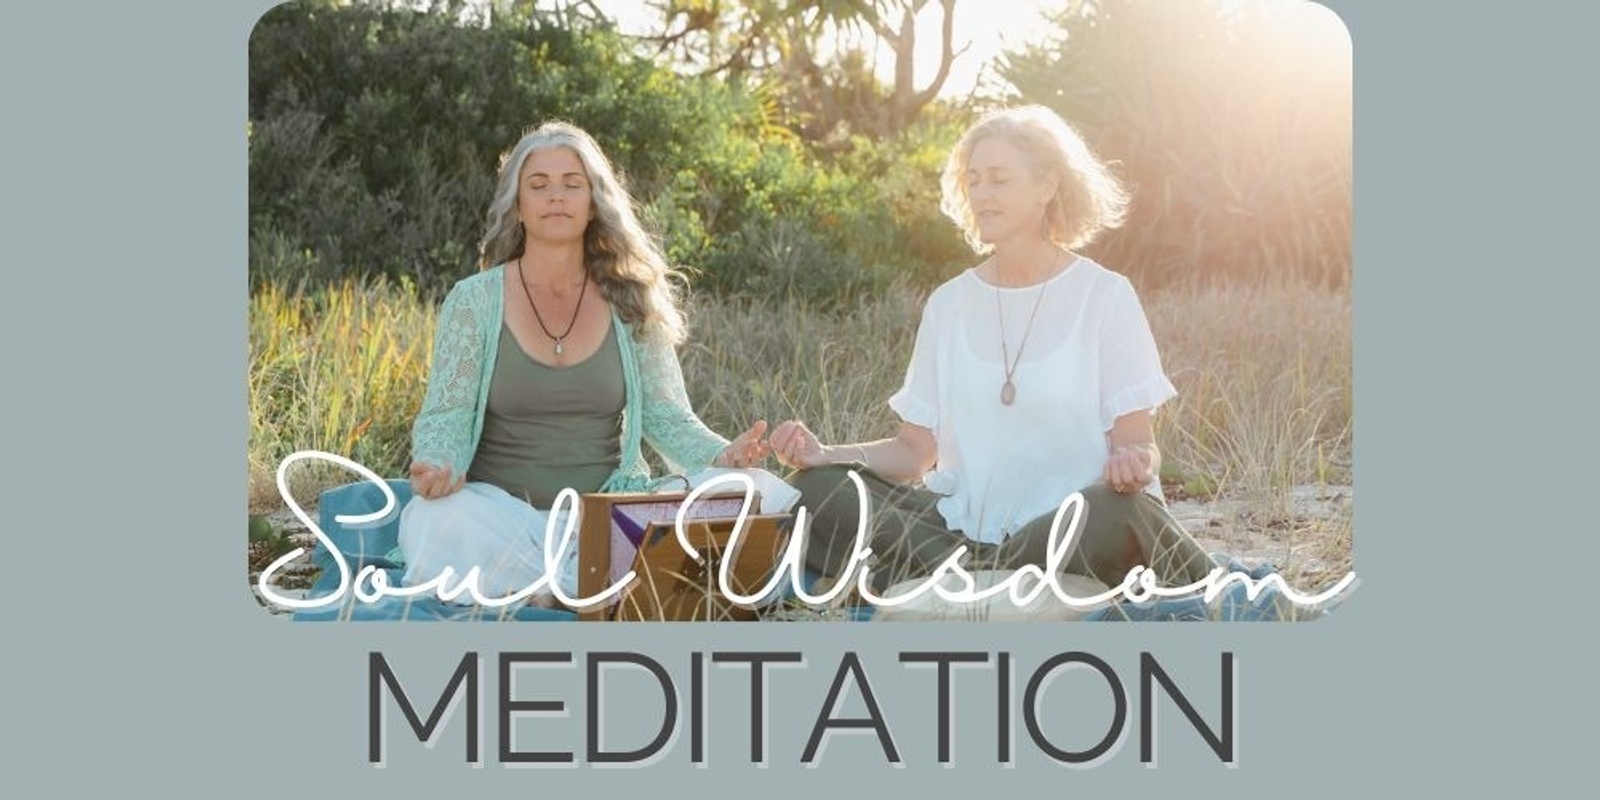 Banner image for Soul Wisdom Meditation